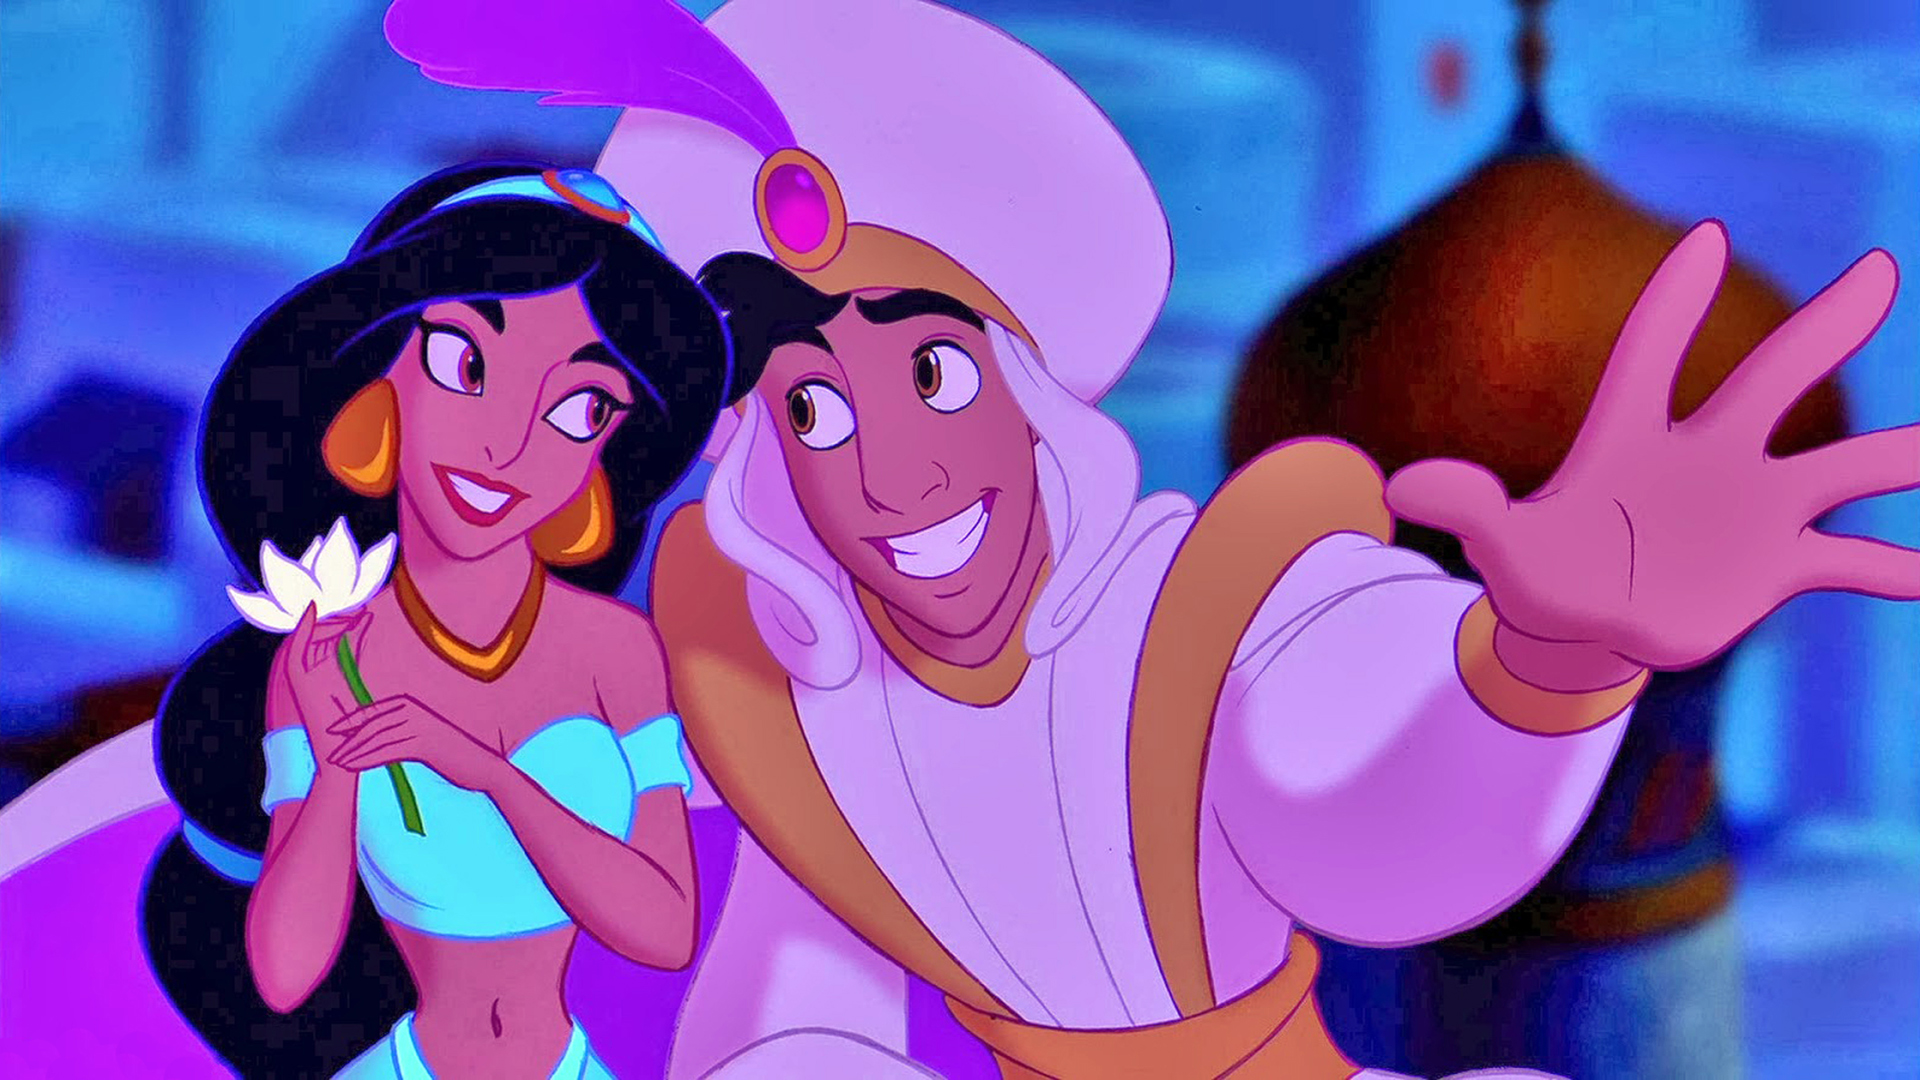 Aladdin As Prince Ali And Princess Jasmine Hd Wallpaper 1920x1080 :  